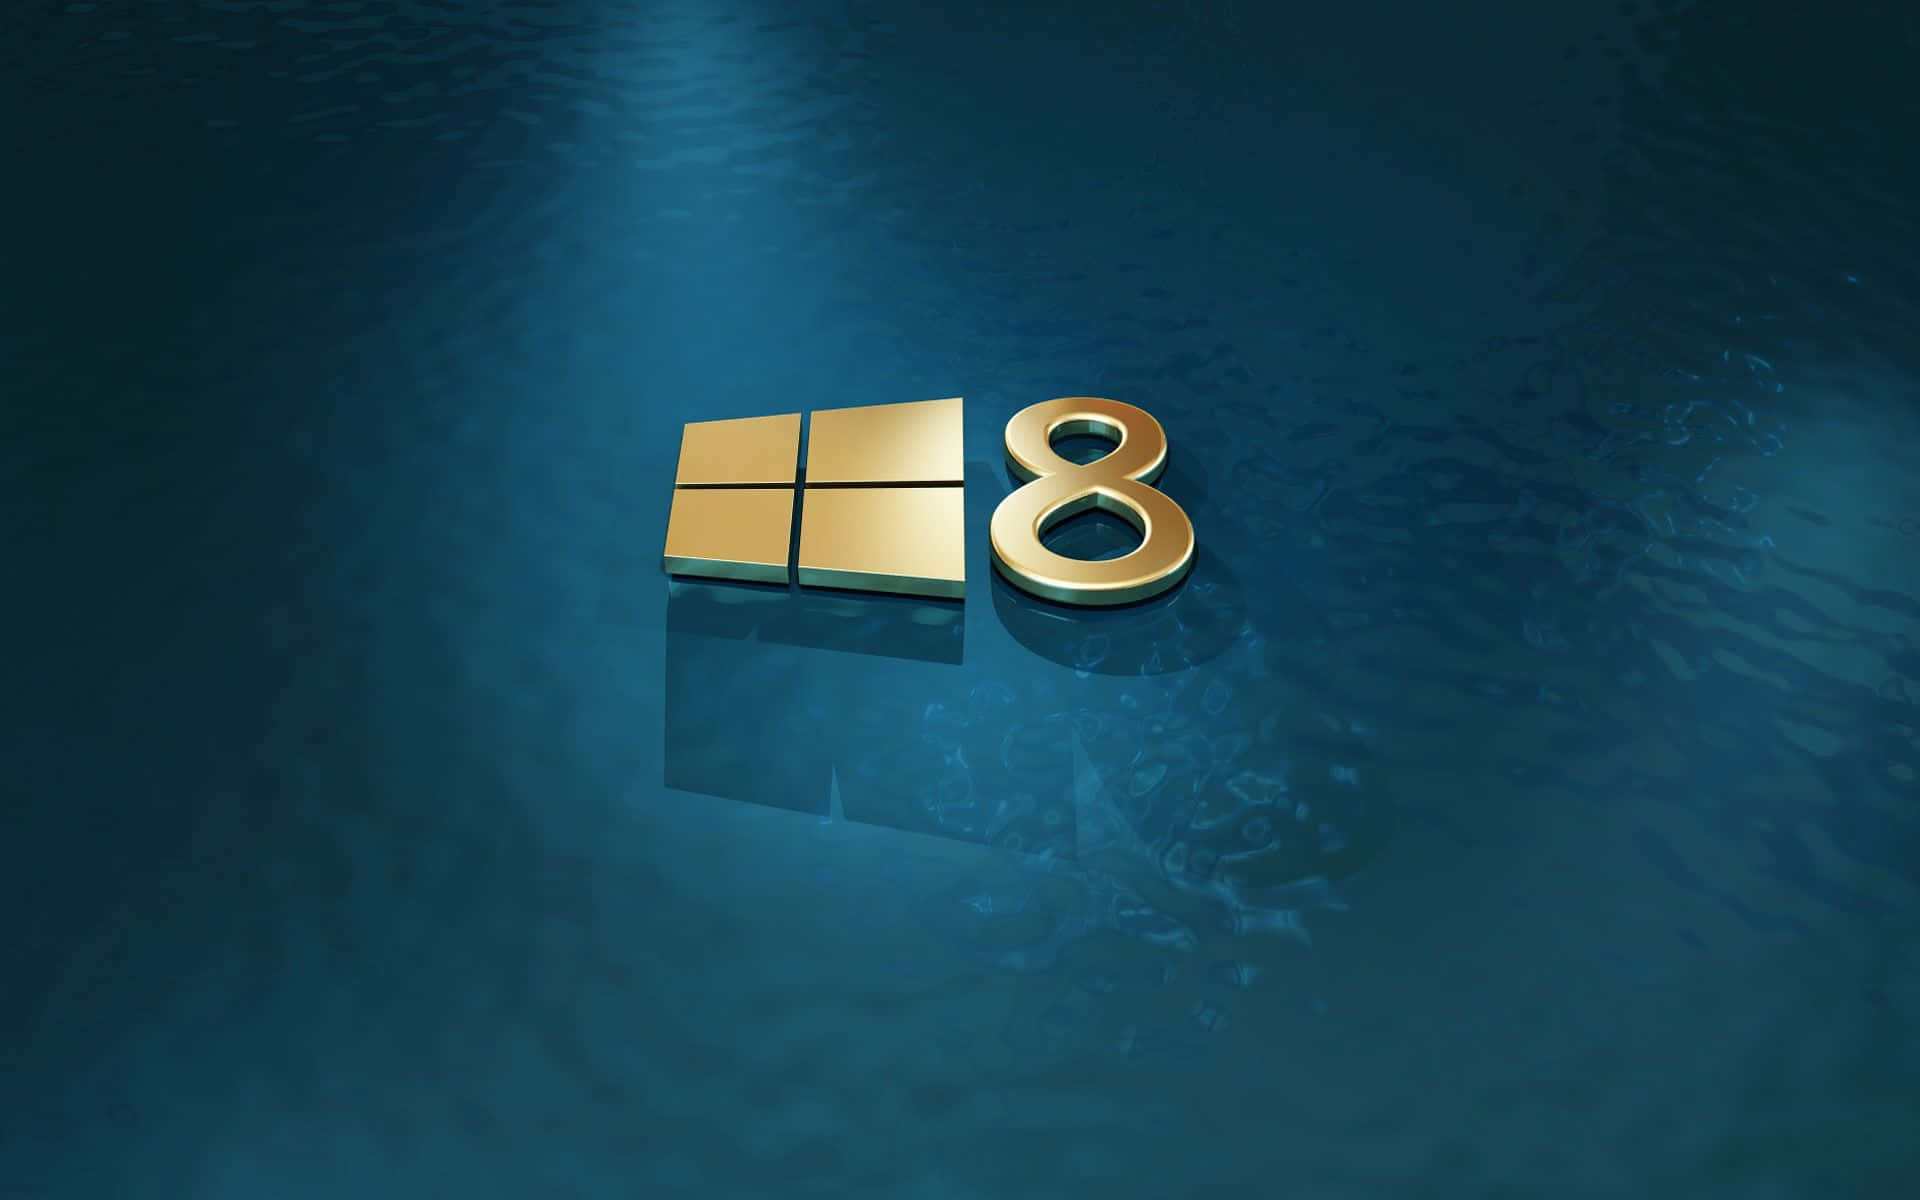 Sfondoastratto Vivace Per Windows 8